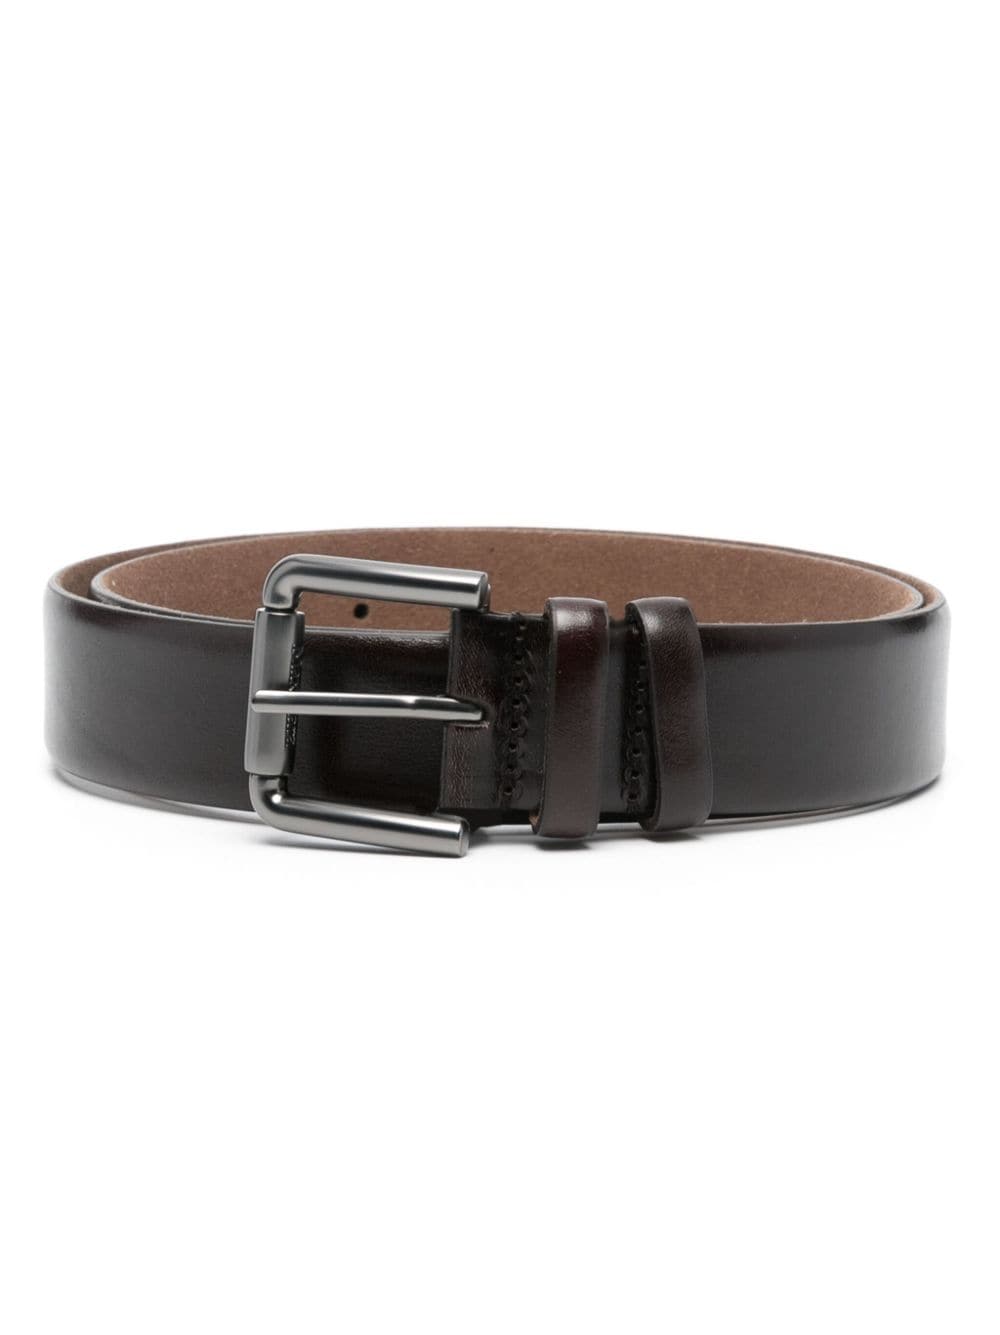 Max Mara grained leather belt - Brown von Max Mara